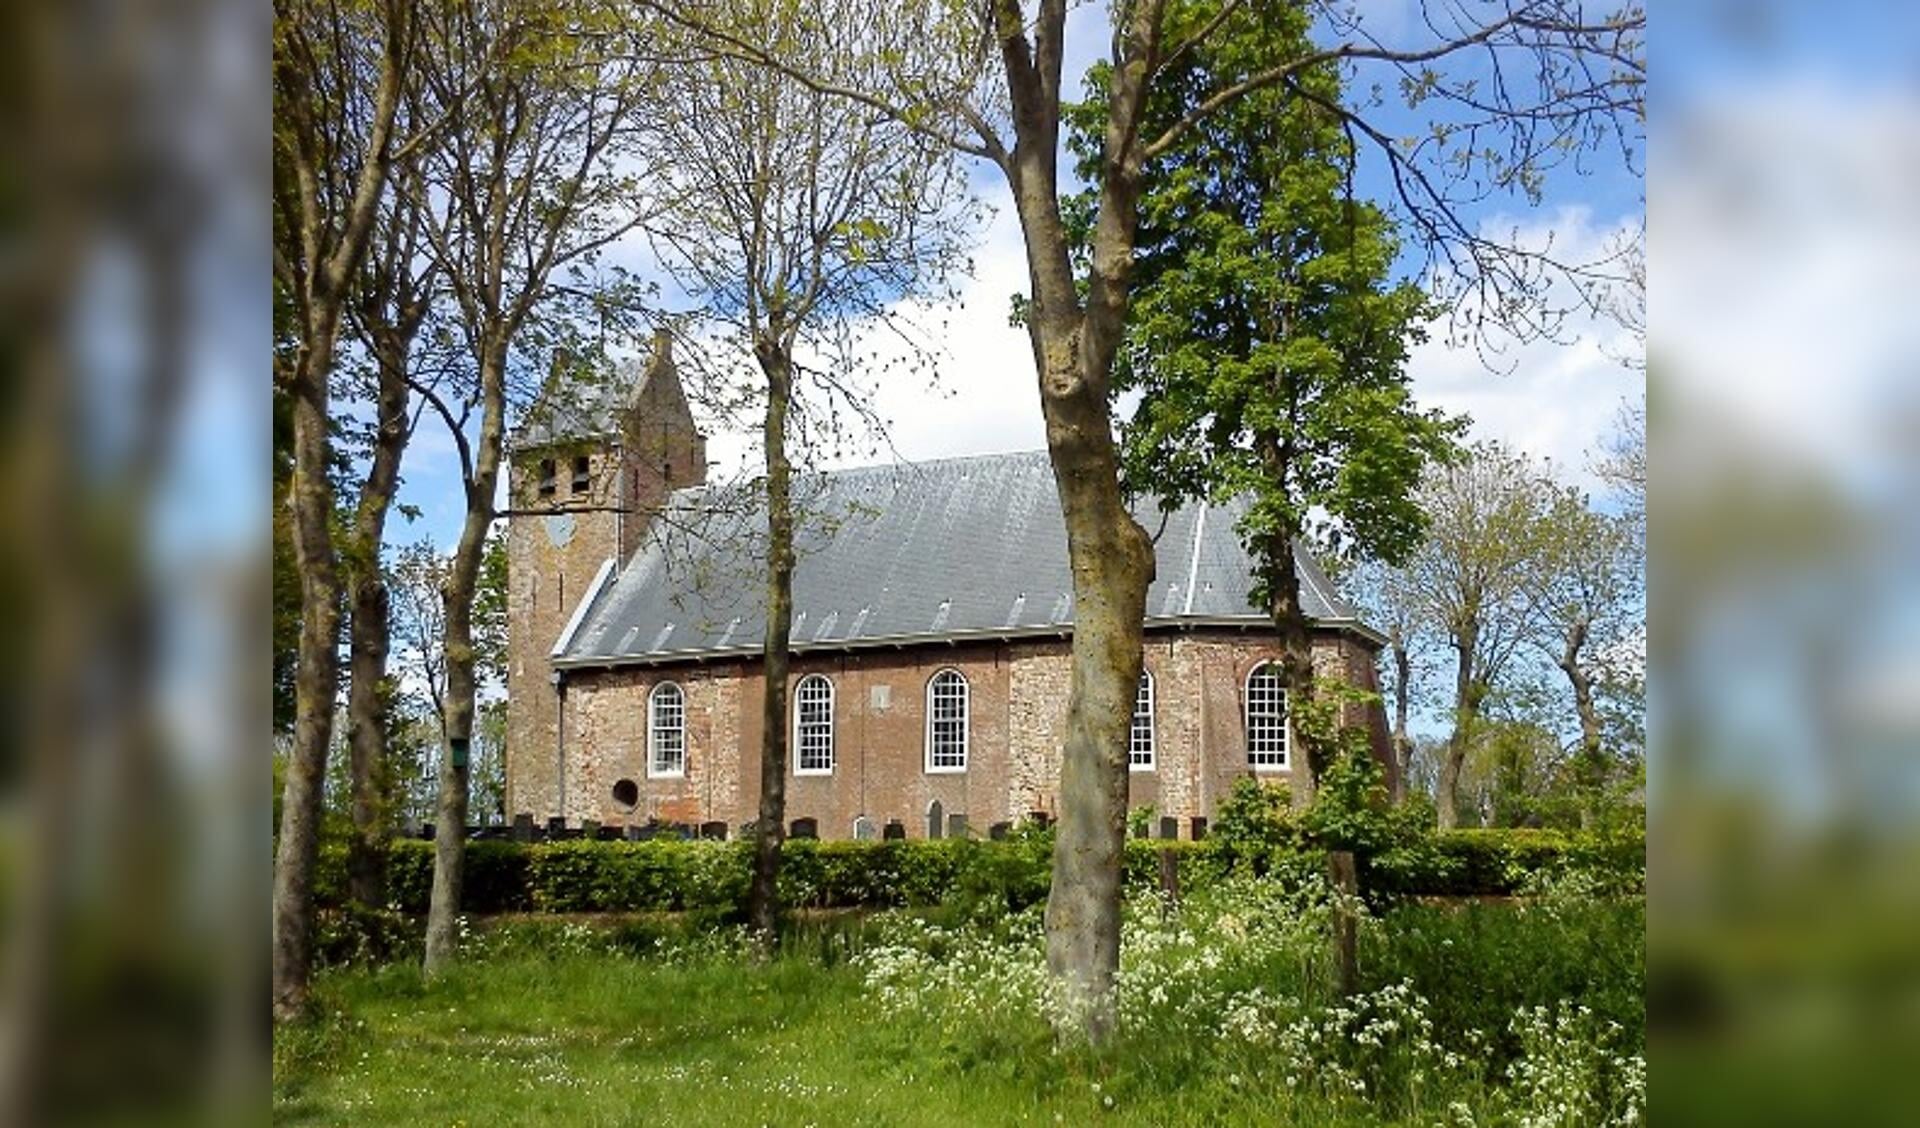 Het kerkje van Westernijkerk waar werd ingebroken.